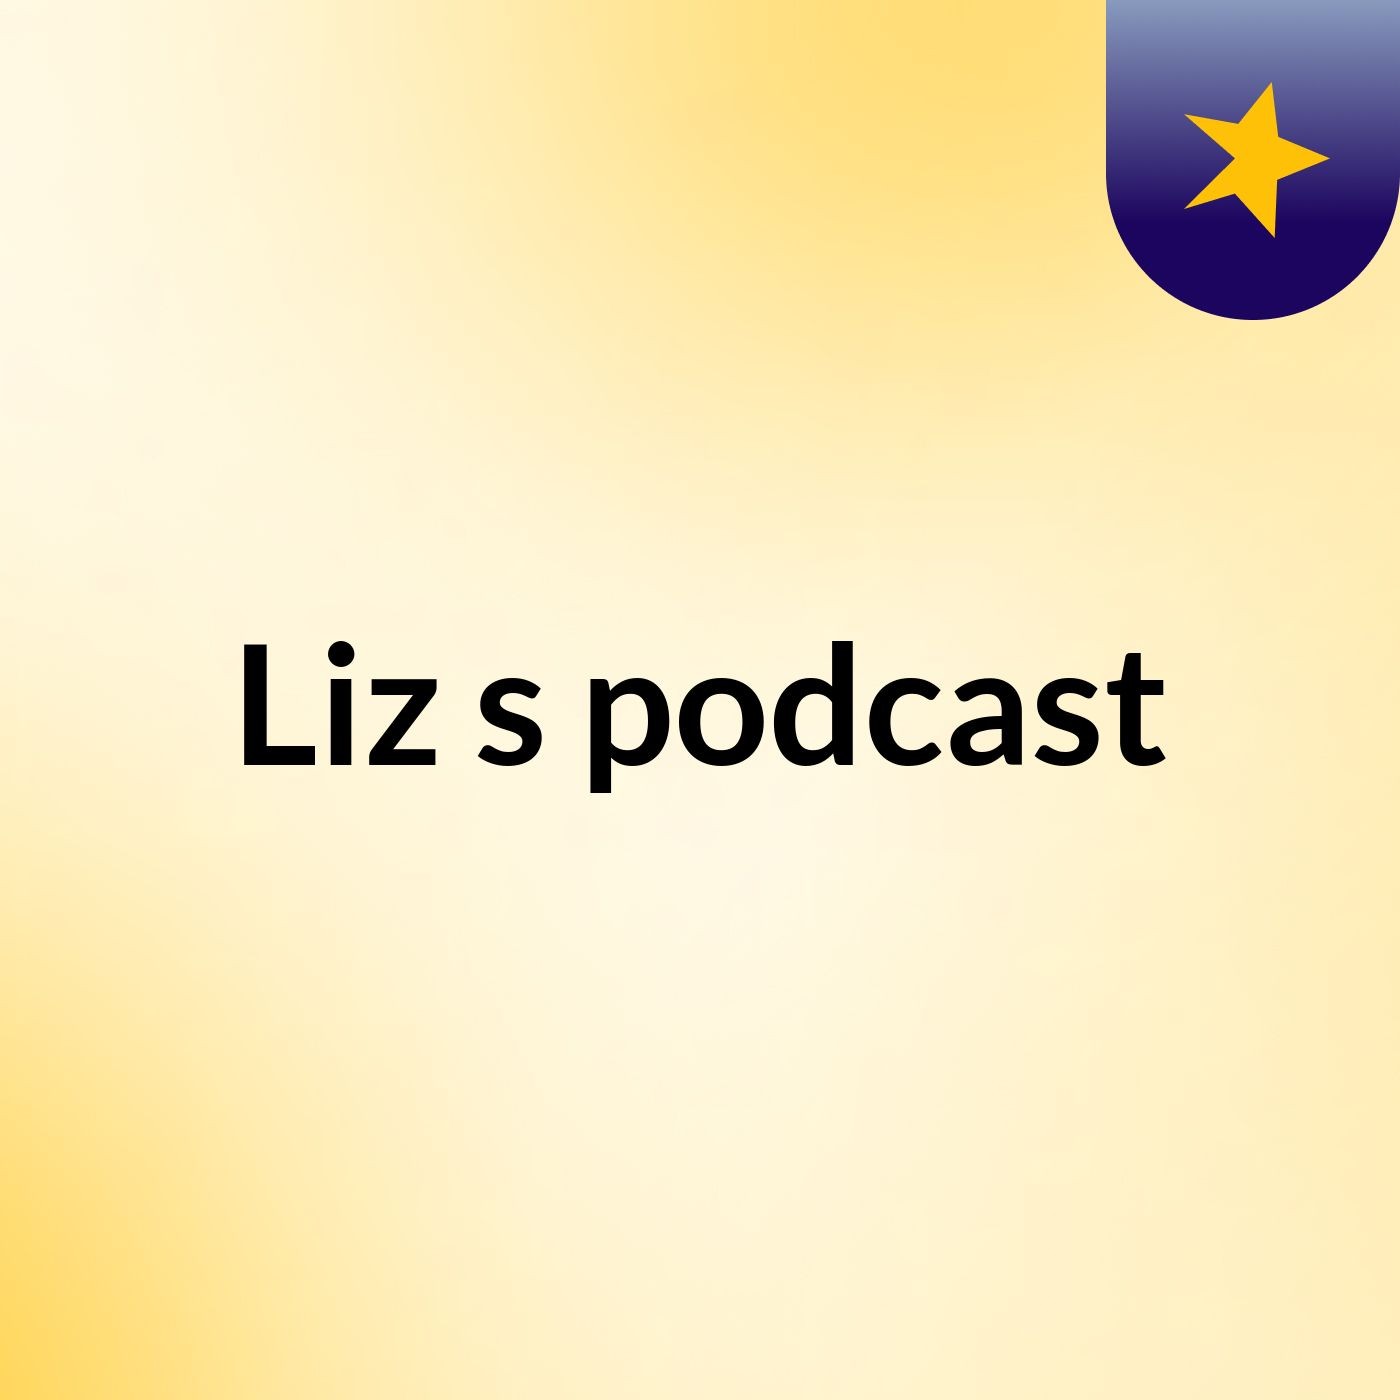 Liz's podcast